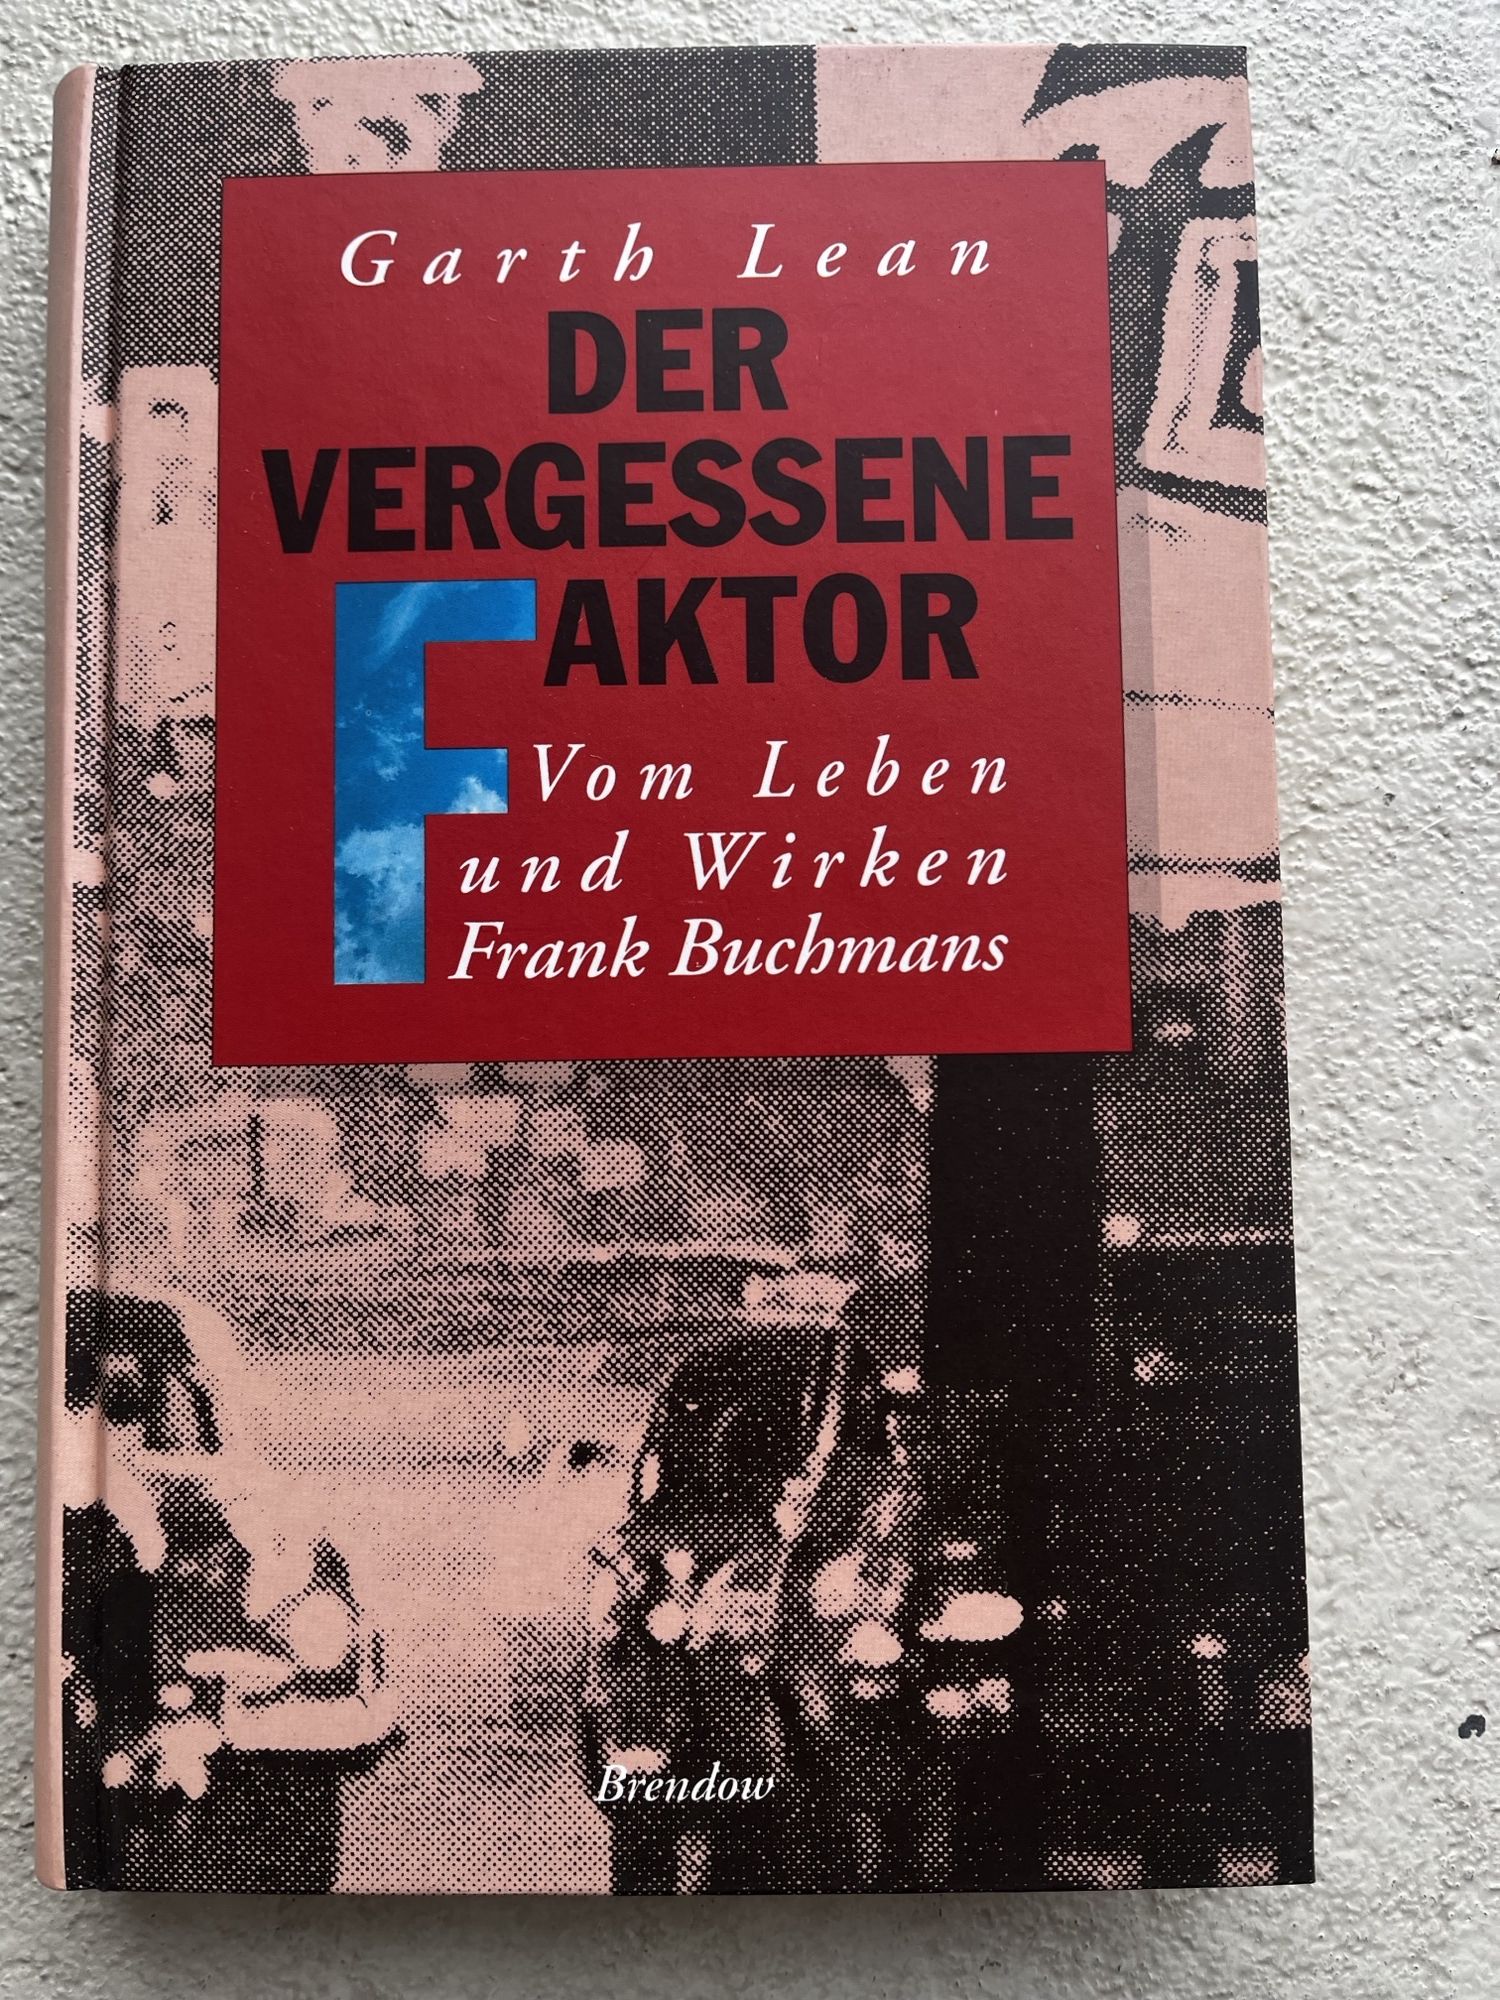 Der vergessene Faktor, Vom Leben und Wirken Frank Buchmans - Garth Lean